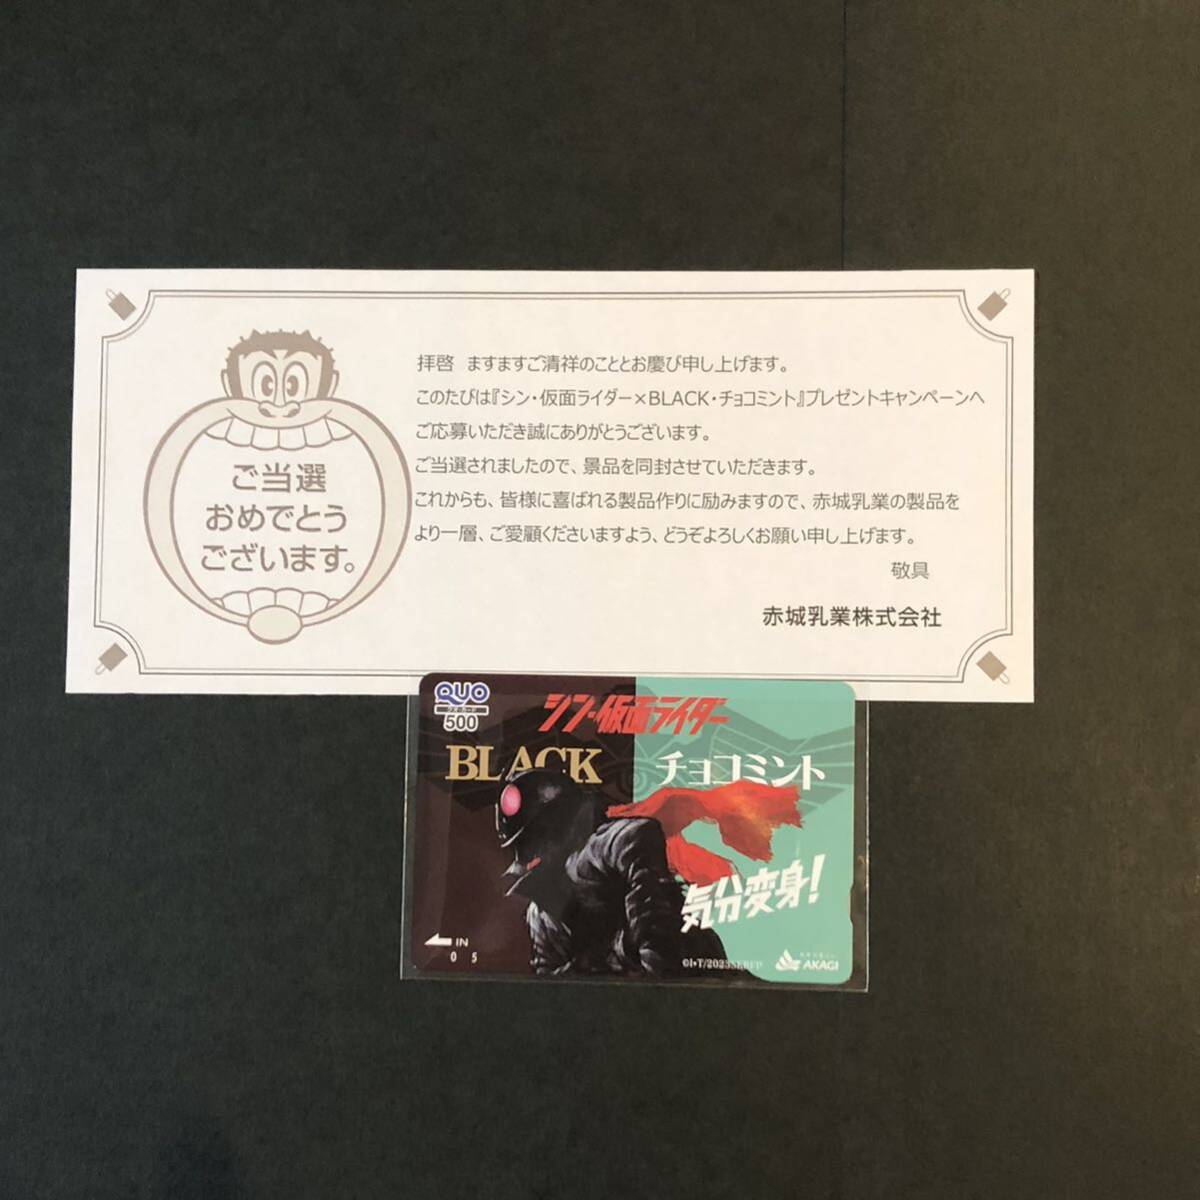 [ стоимость доставки 63 иен ~]sin* Kamen Rider ×BLACK* шоко мята подарок акция QUO карта 500 иен минут * красный замок . индустрия 